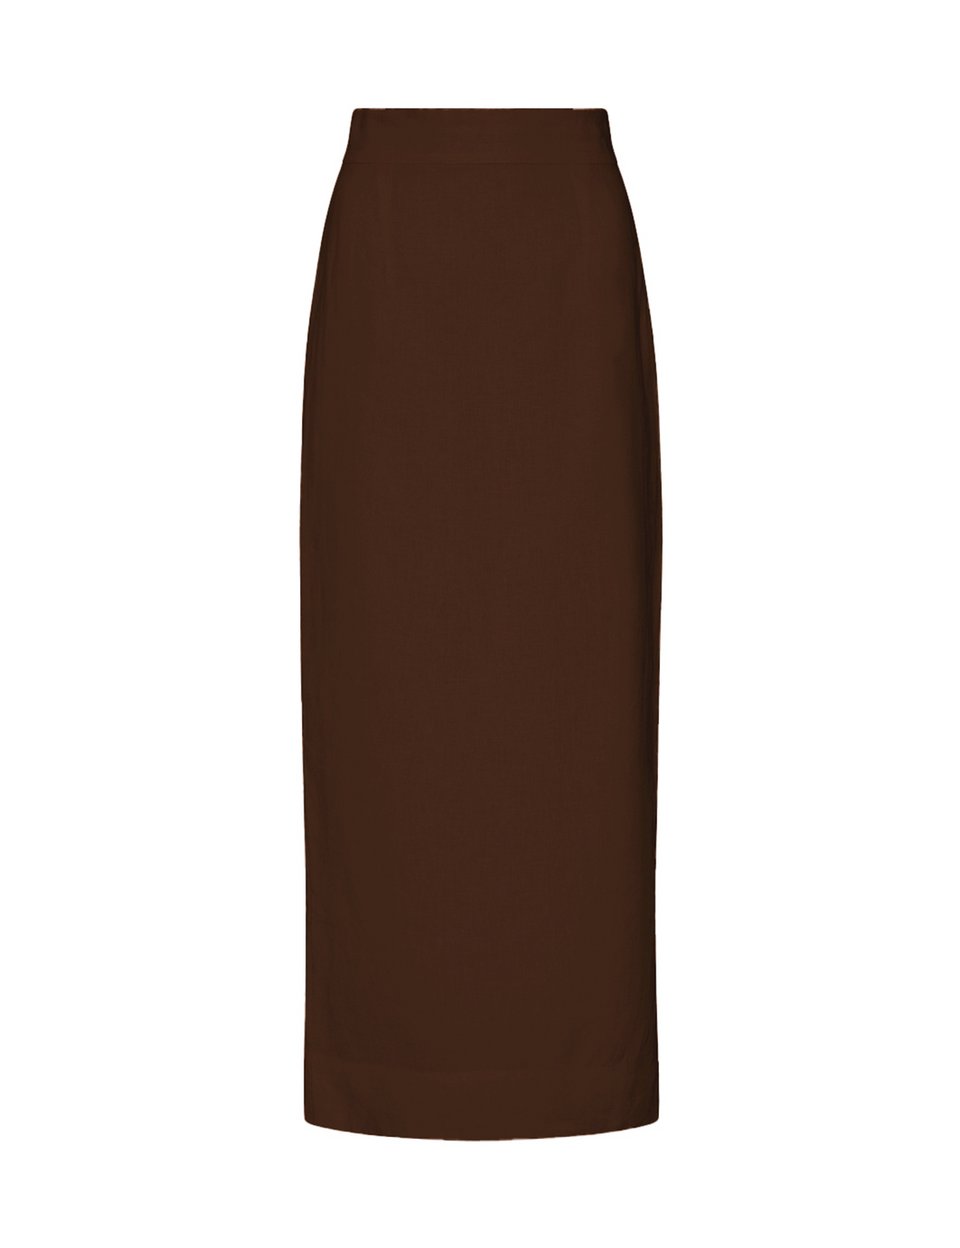 Casual Vest Pencil Skirt Comfy Set